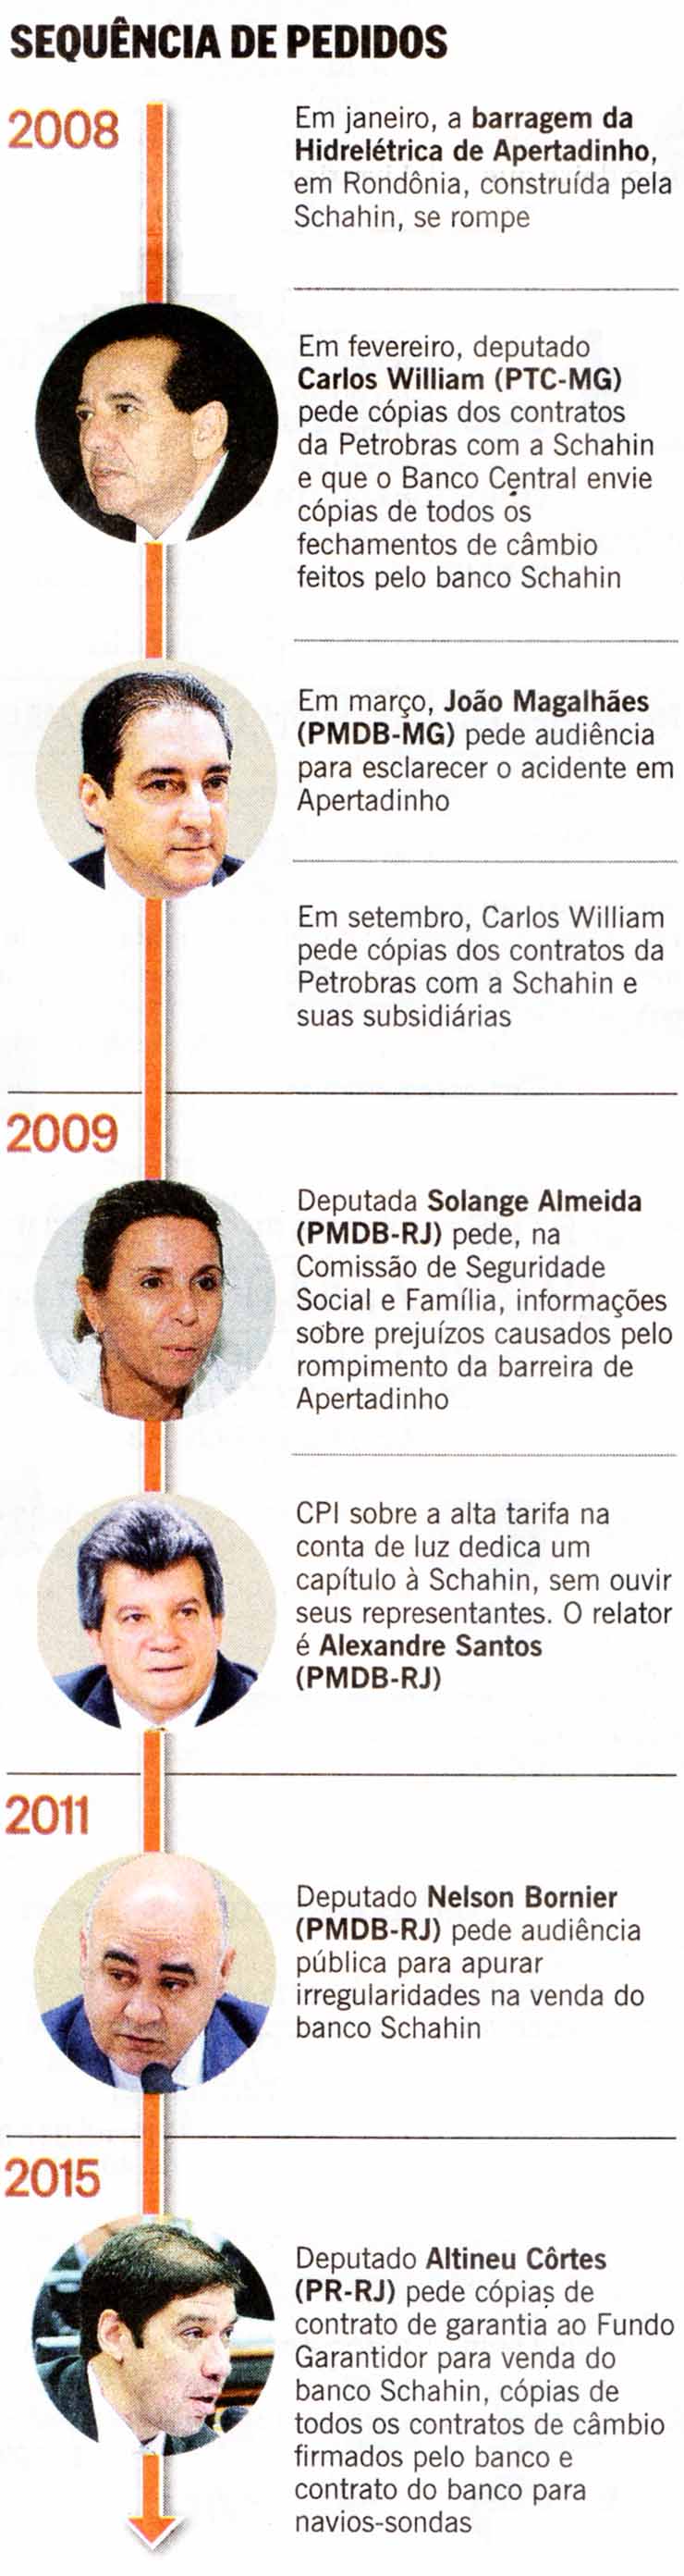 O Globo - 05/07/2015 - Eduardo Cunha x Schahin - Foto: Agncia Cmara / Arquivo/ Zeca Ribeiro